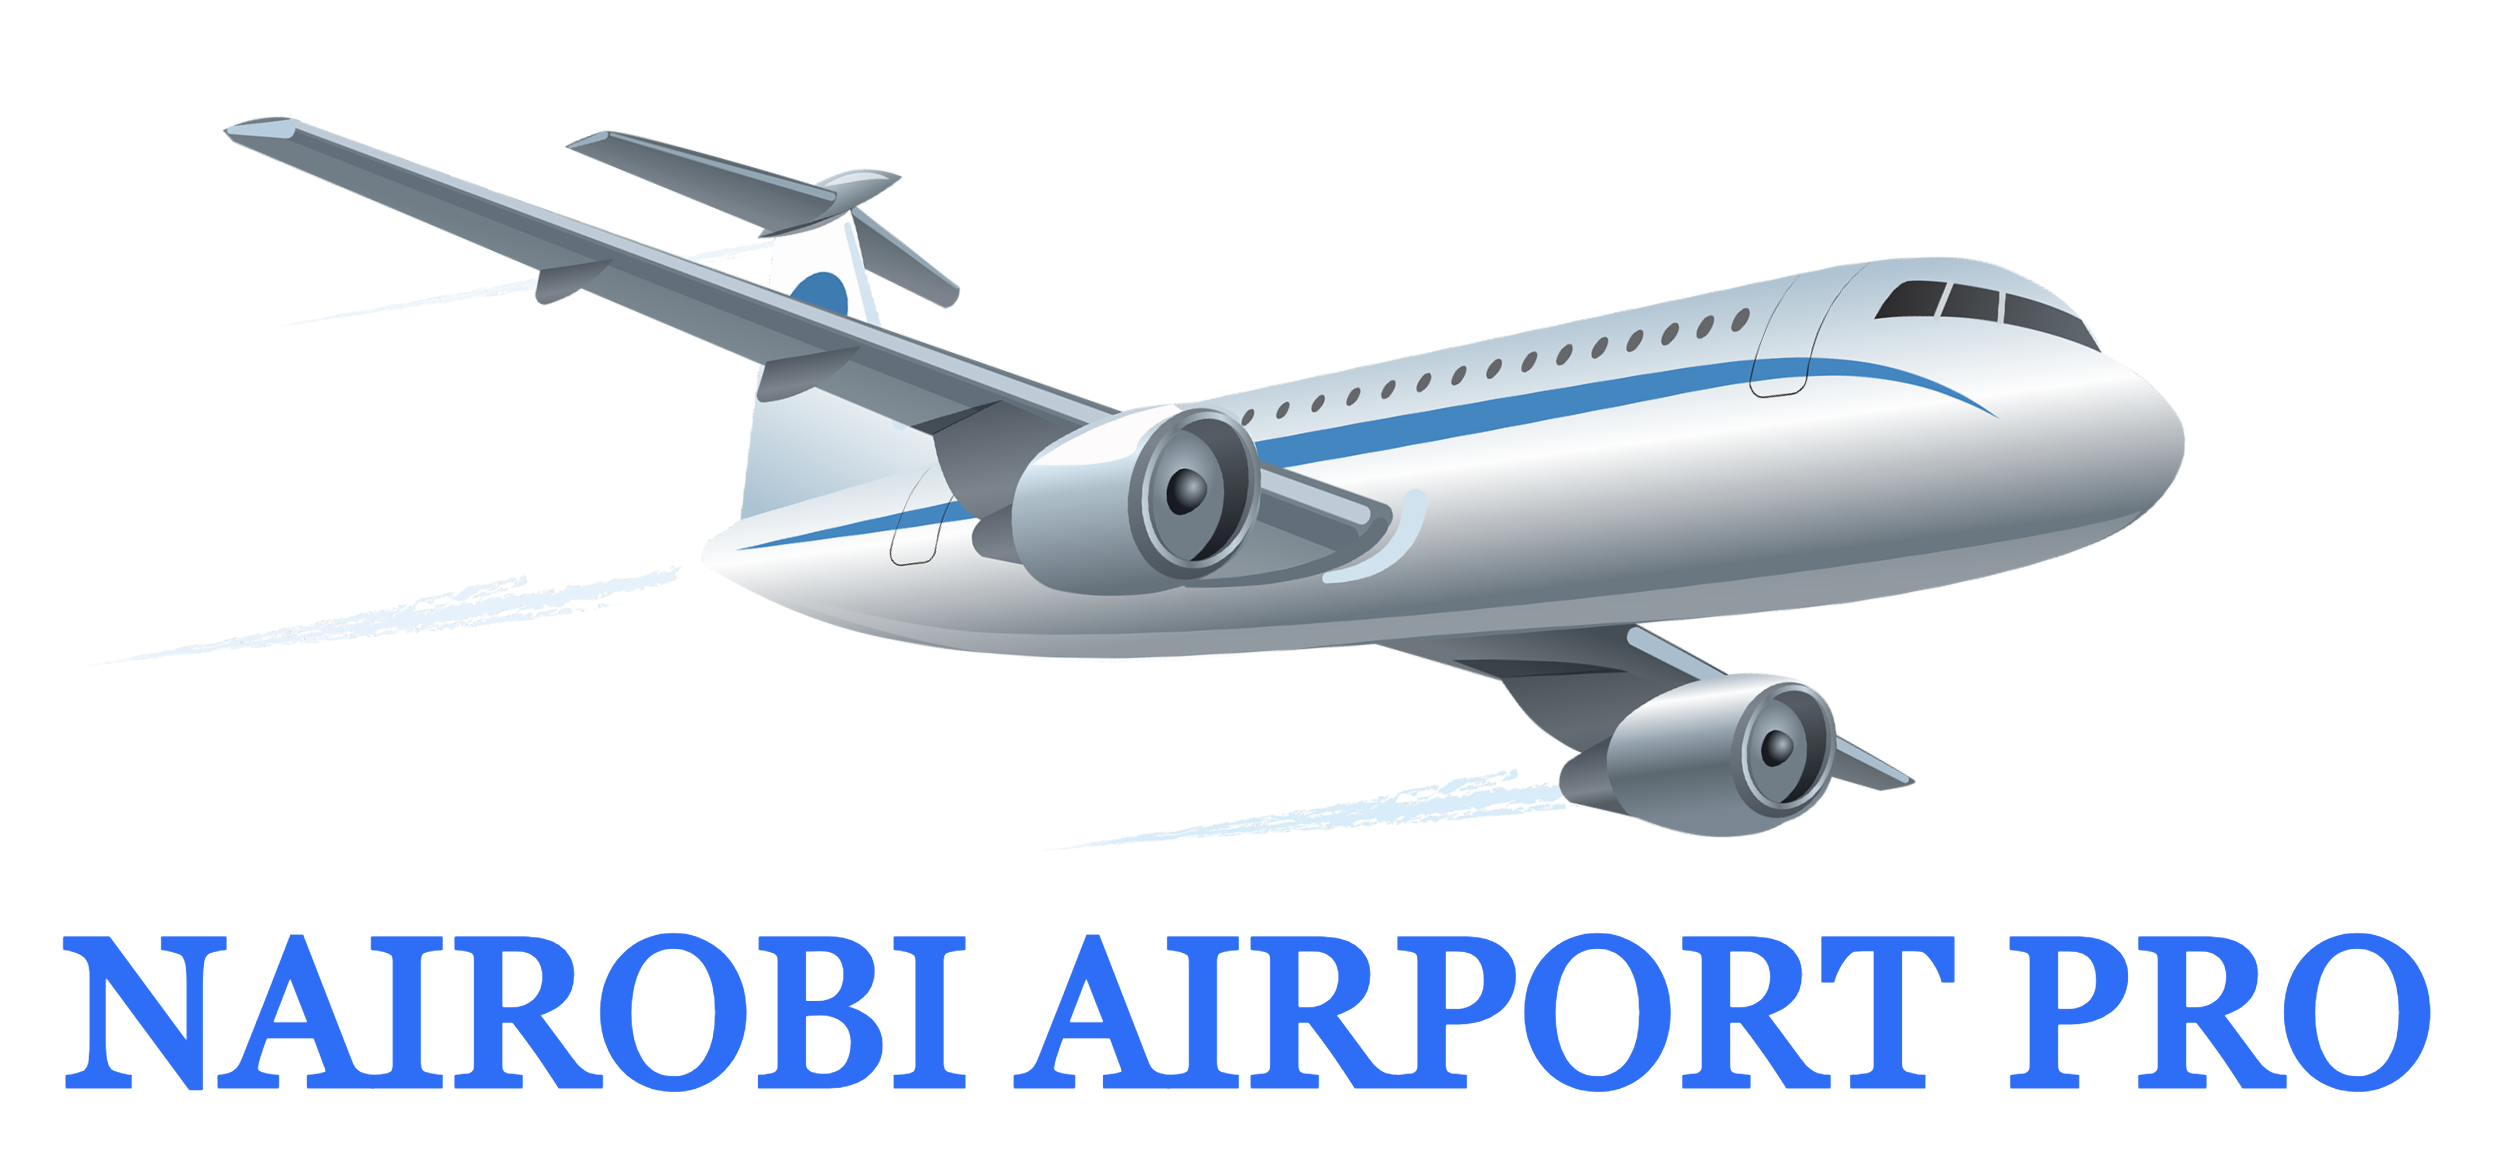 Nairobi Airport Pro | Search results car rentals - Nairobi Airport Pro